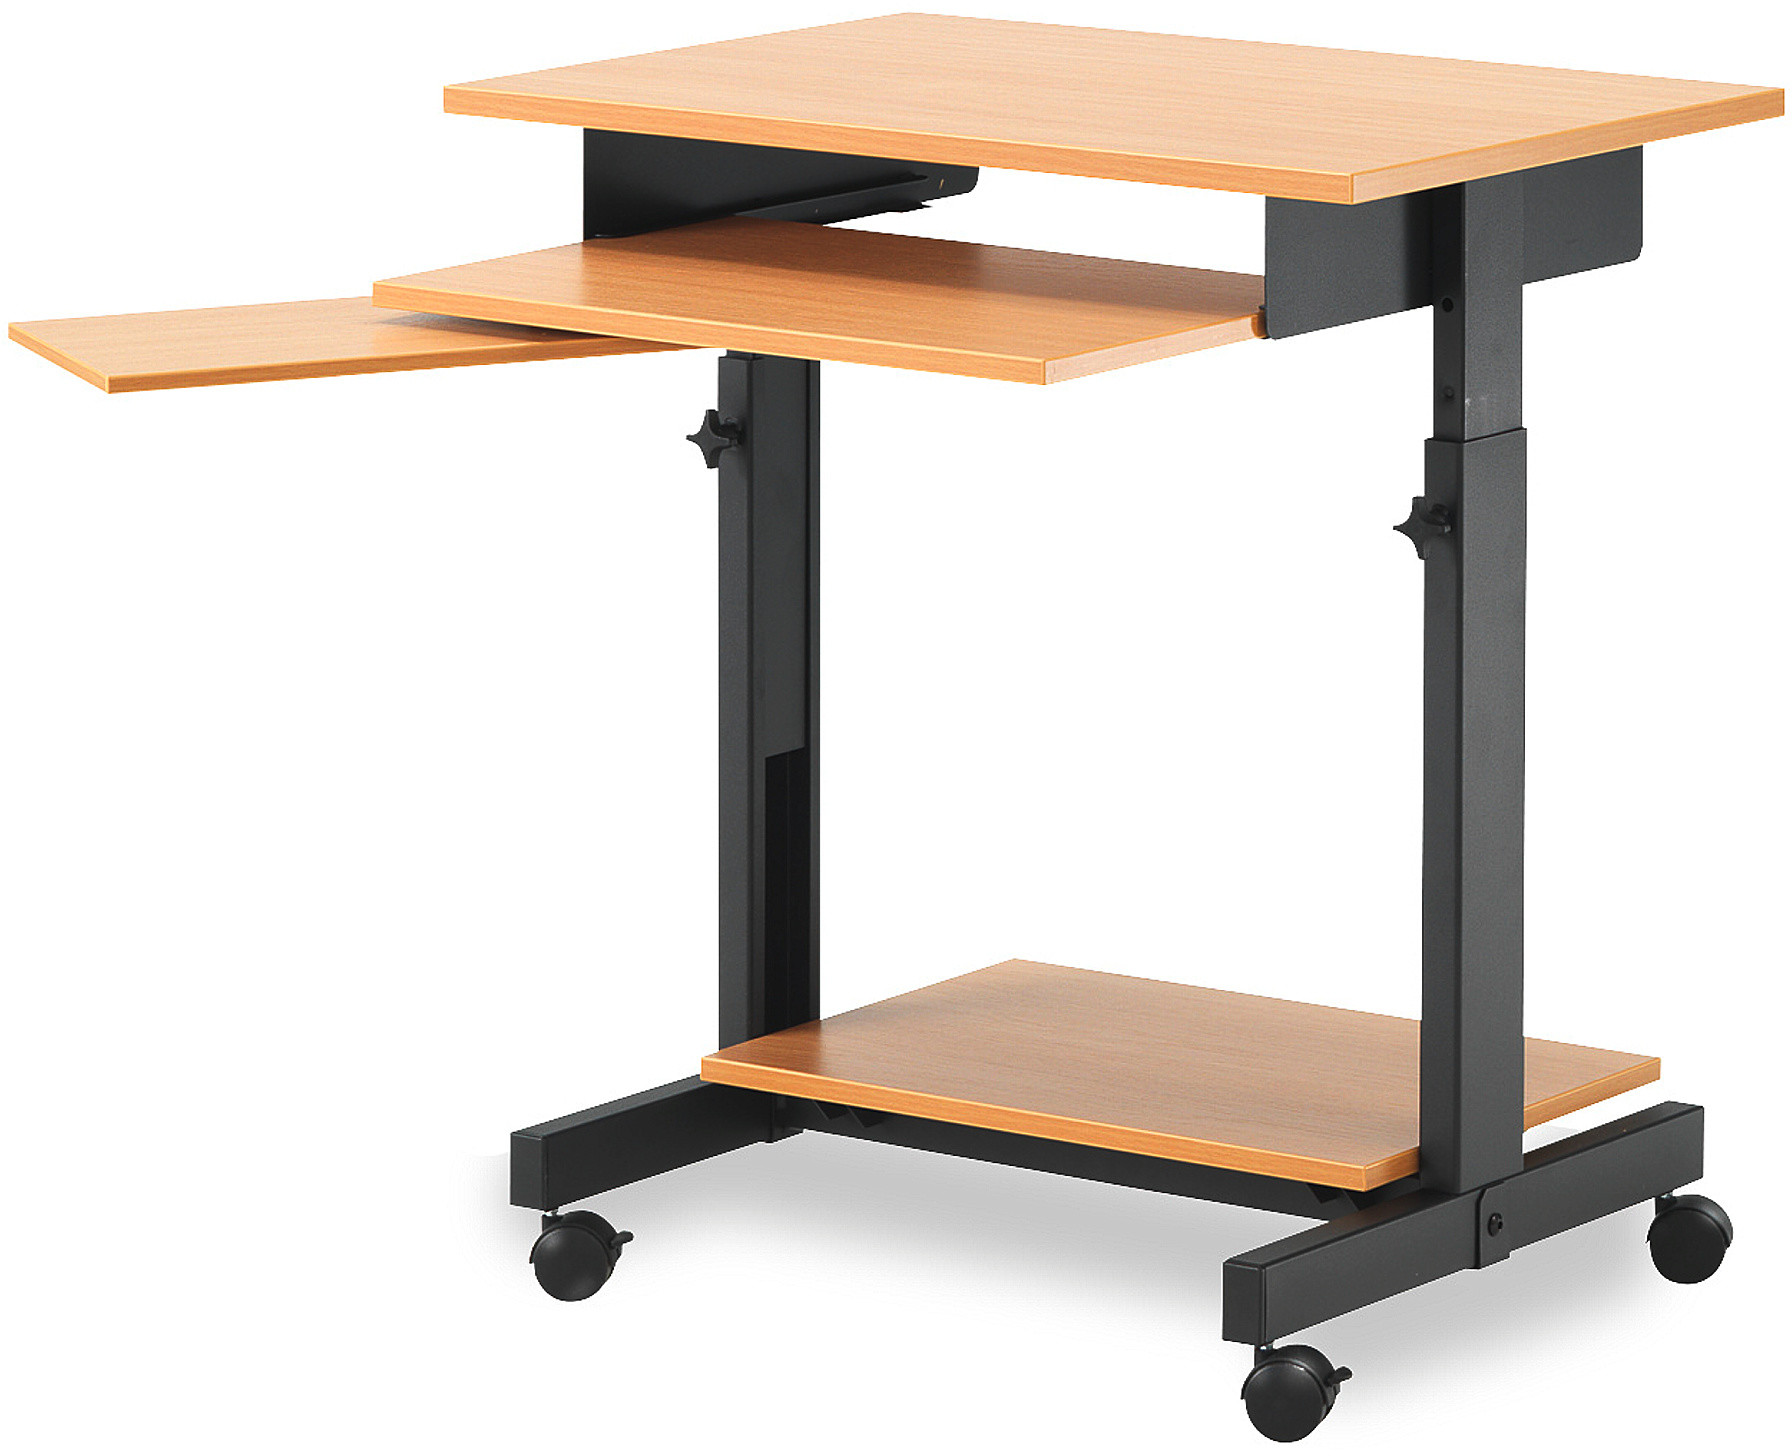 стол для ноутбука малогабаритный своими руками